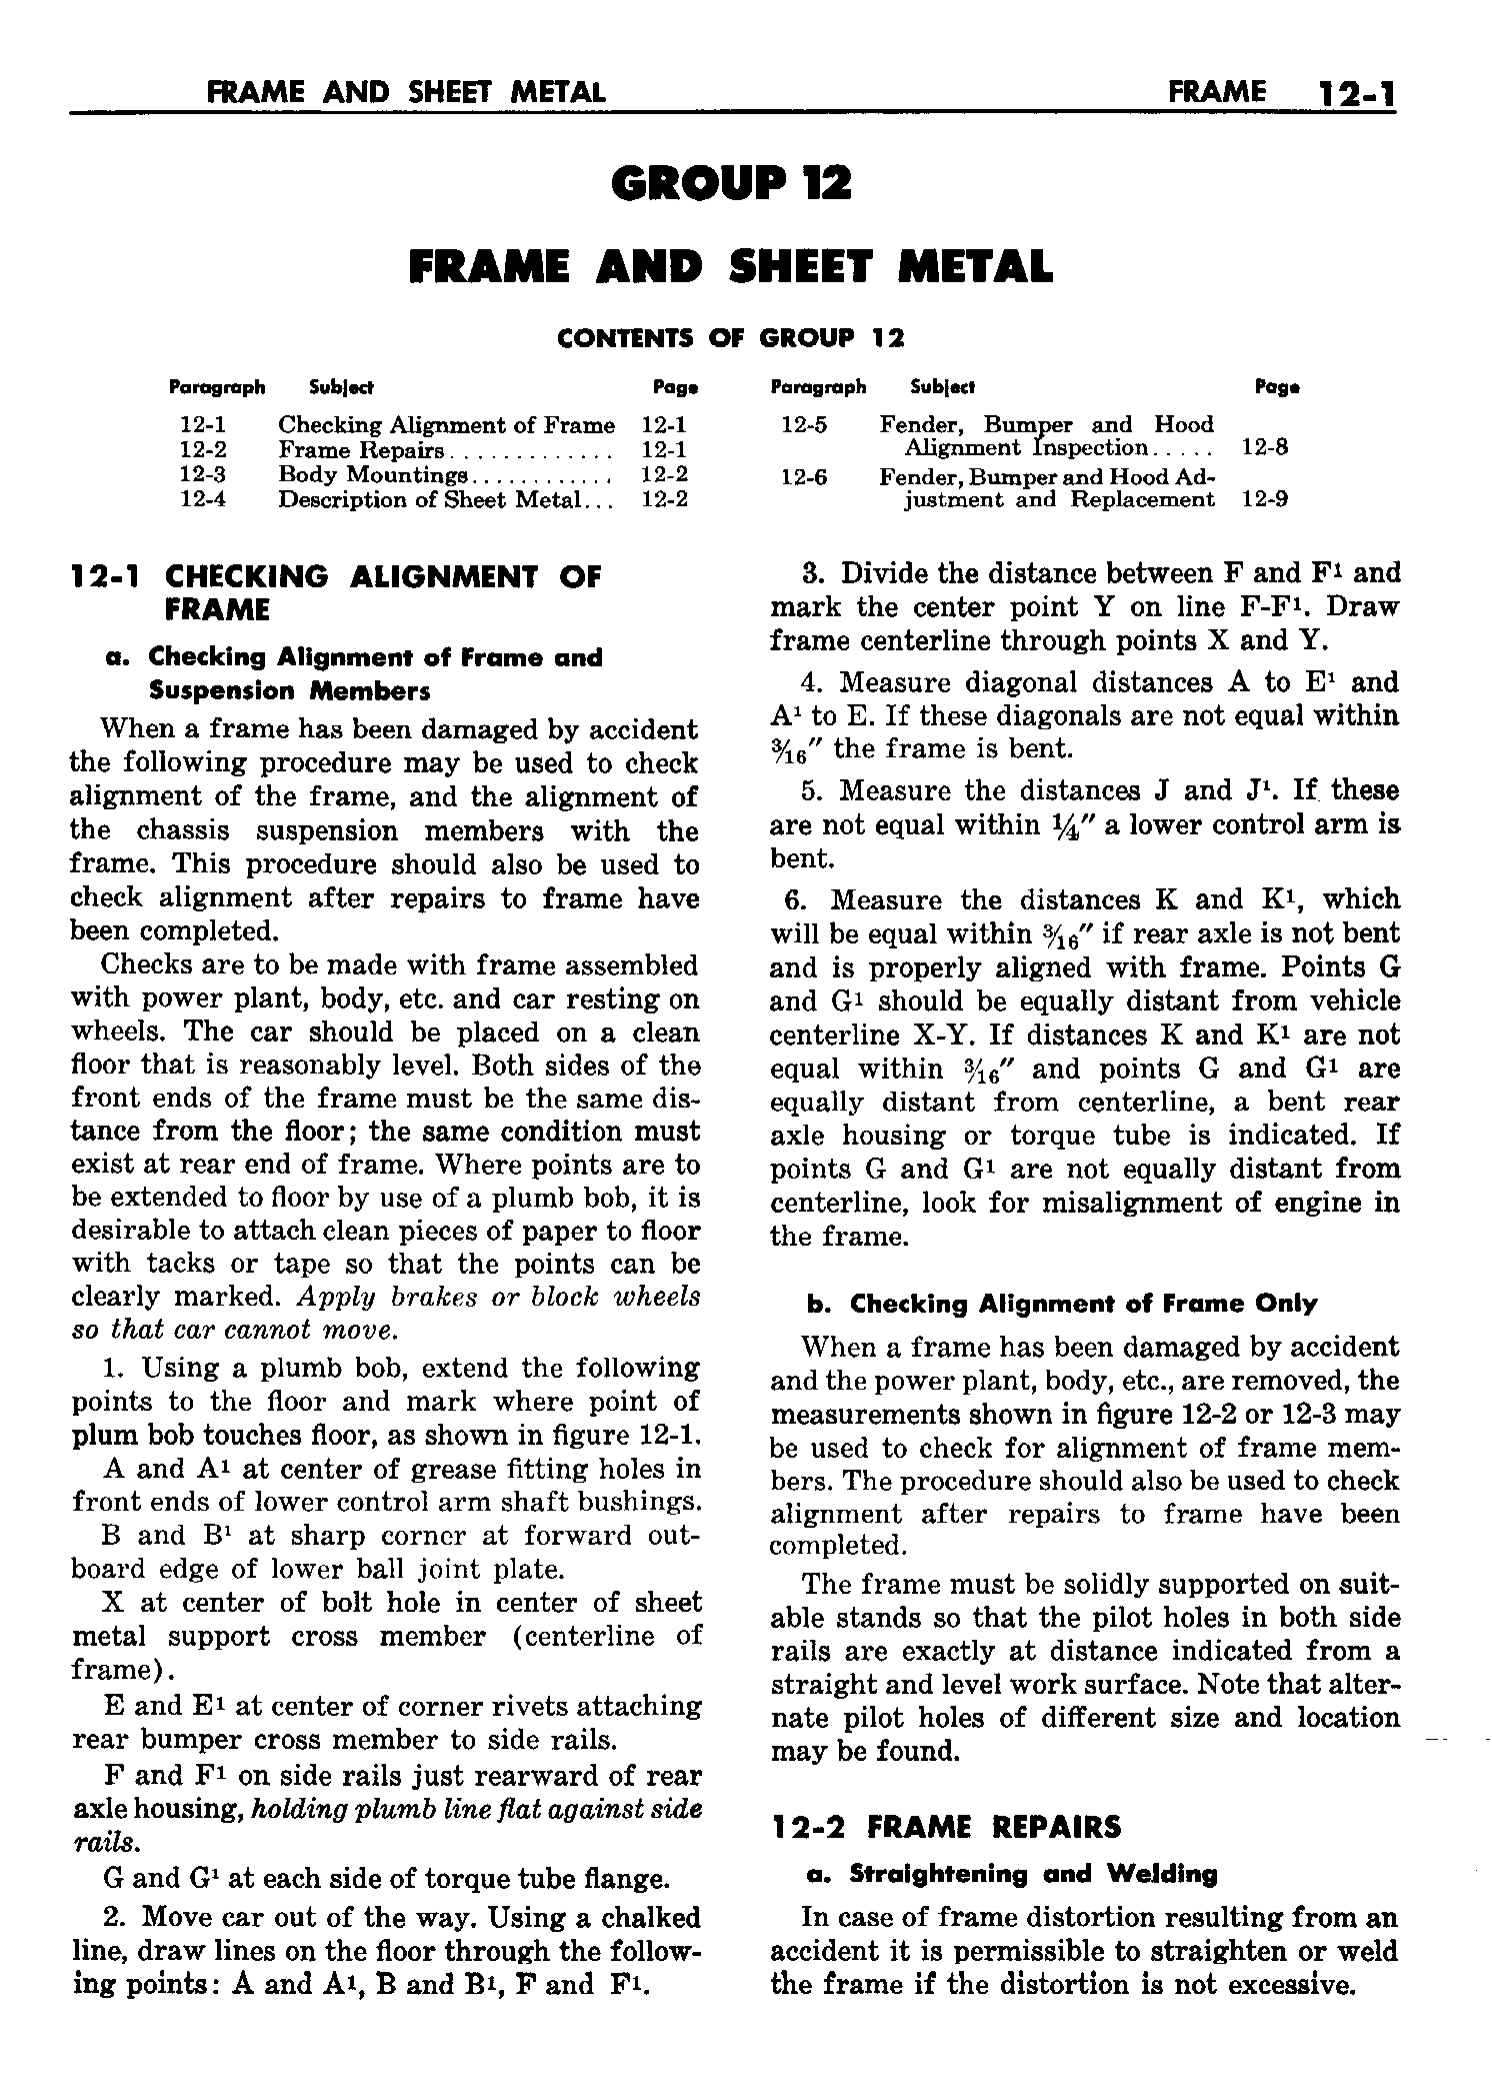 n_13 1958 Buick Shop Manual - Frame & Sheet Metal_1.jpg